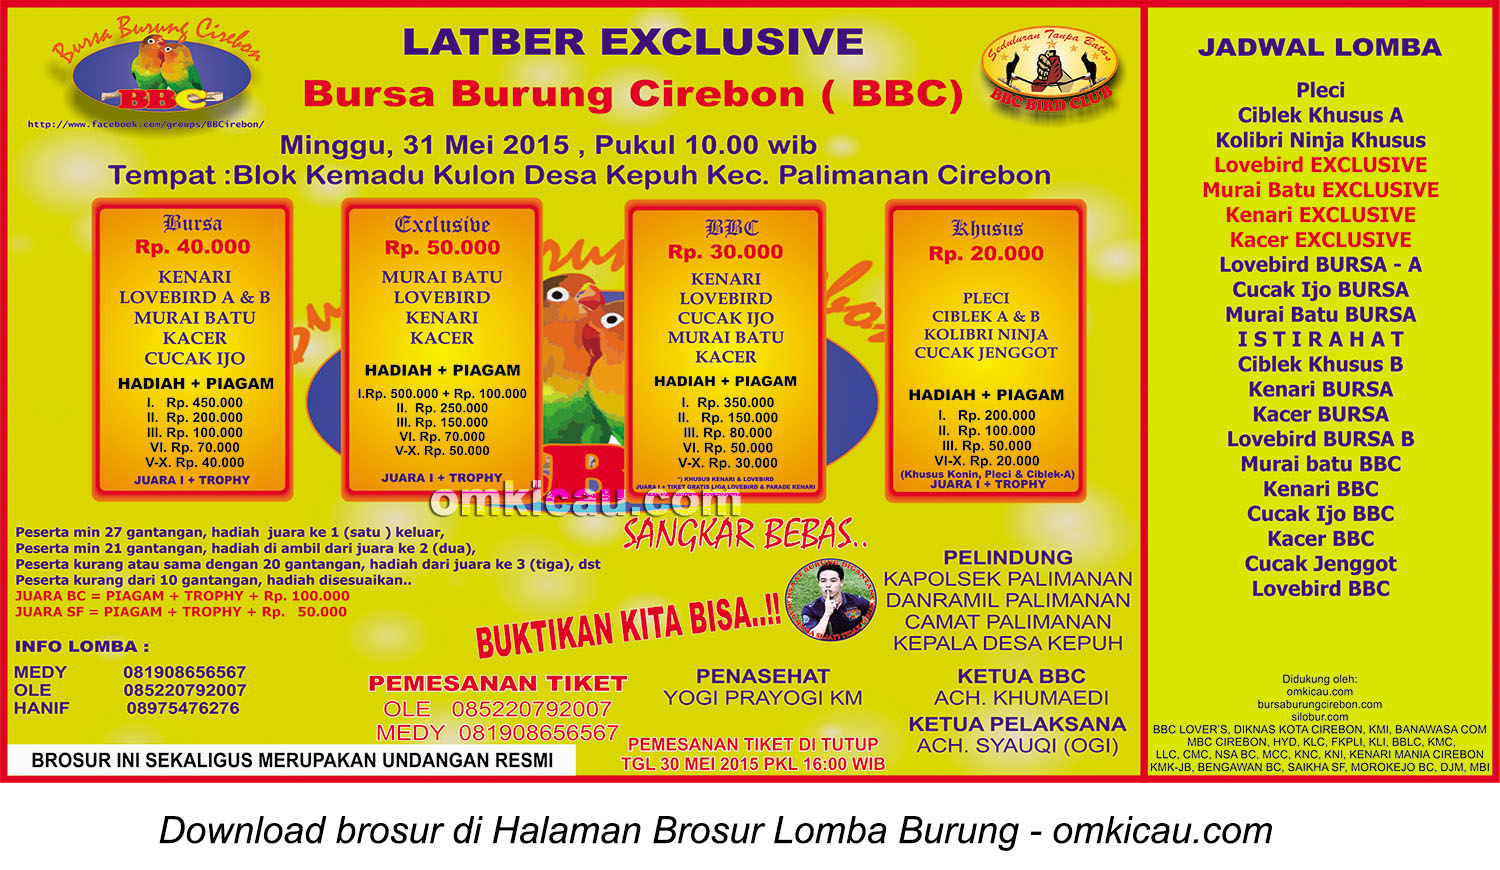 Brosur Latber Exclusive Bursa Burung Cirebon (BBC), 31 Mei 2015